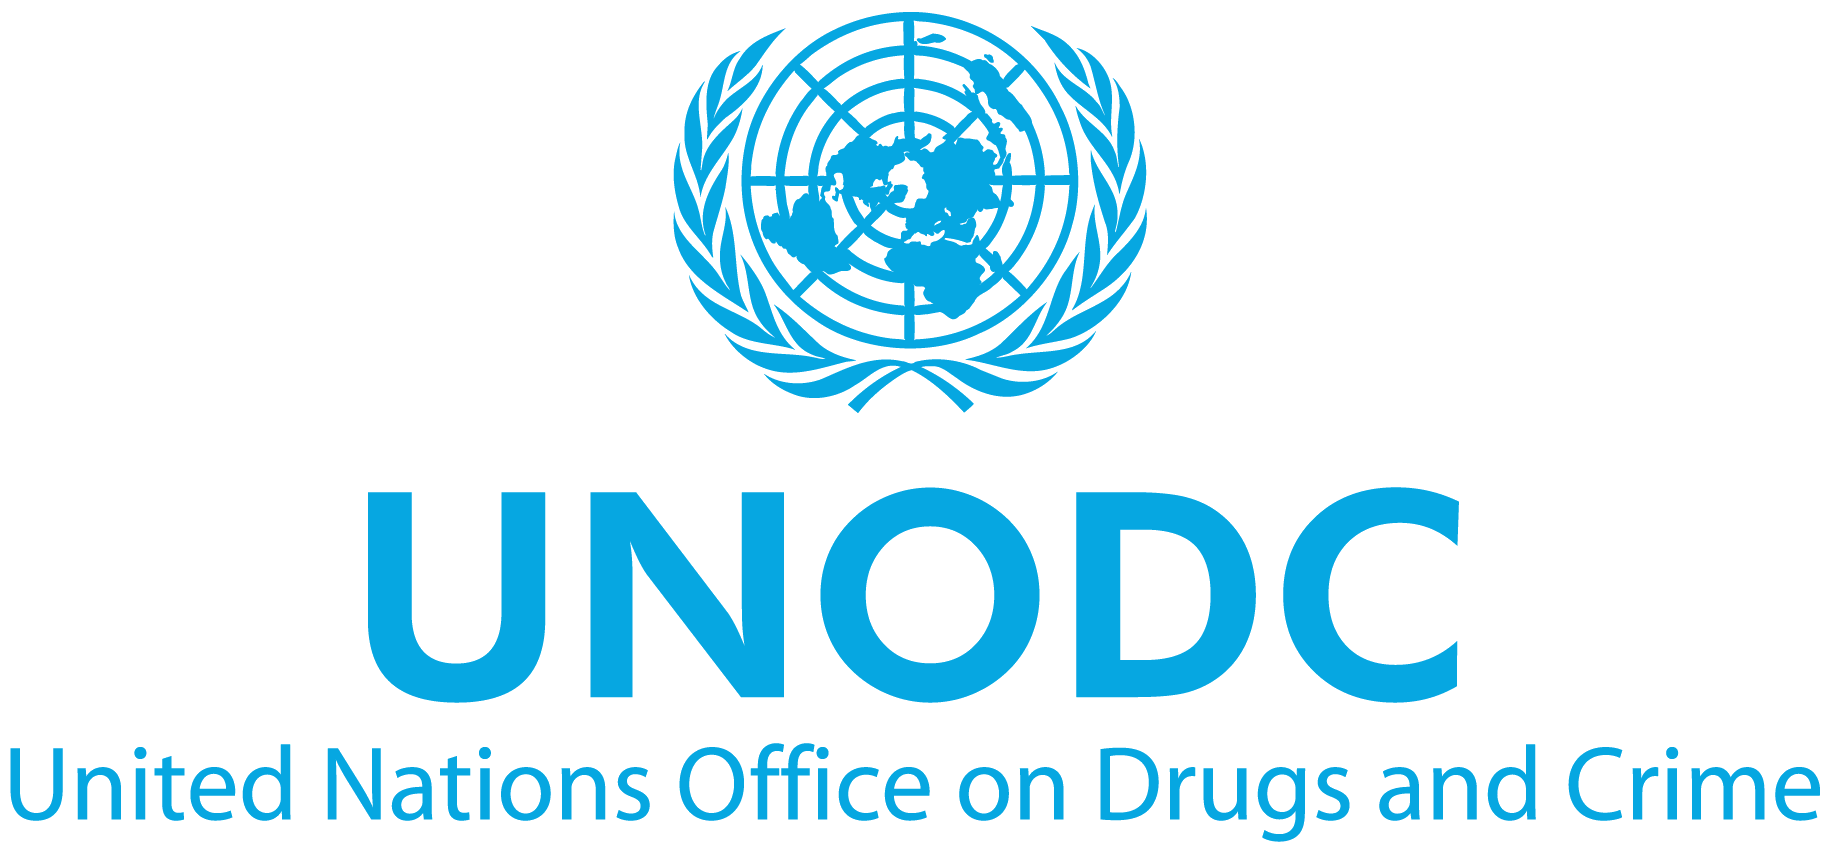 Управление ООН по наркотикам и преступности (УНП ООН) является глобальным лидером в борьбе против незаконных наркотиков и международной преступности. 
Управление было основано в 1997 г. в результате слияния Программы ООН по контролю за наркотиками и Центра по предотвращению международной преступности. Организация предоставляет поддержку государствам-членам в борьбе против незаконных наркотиков, преступности и терроризма. 
